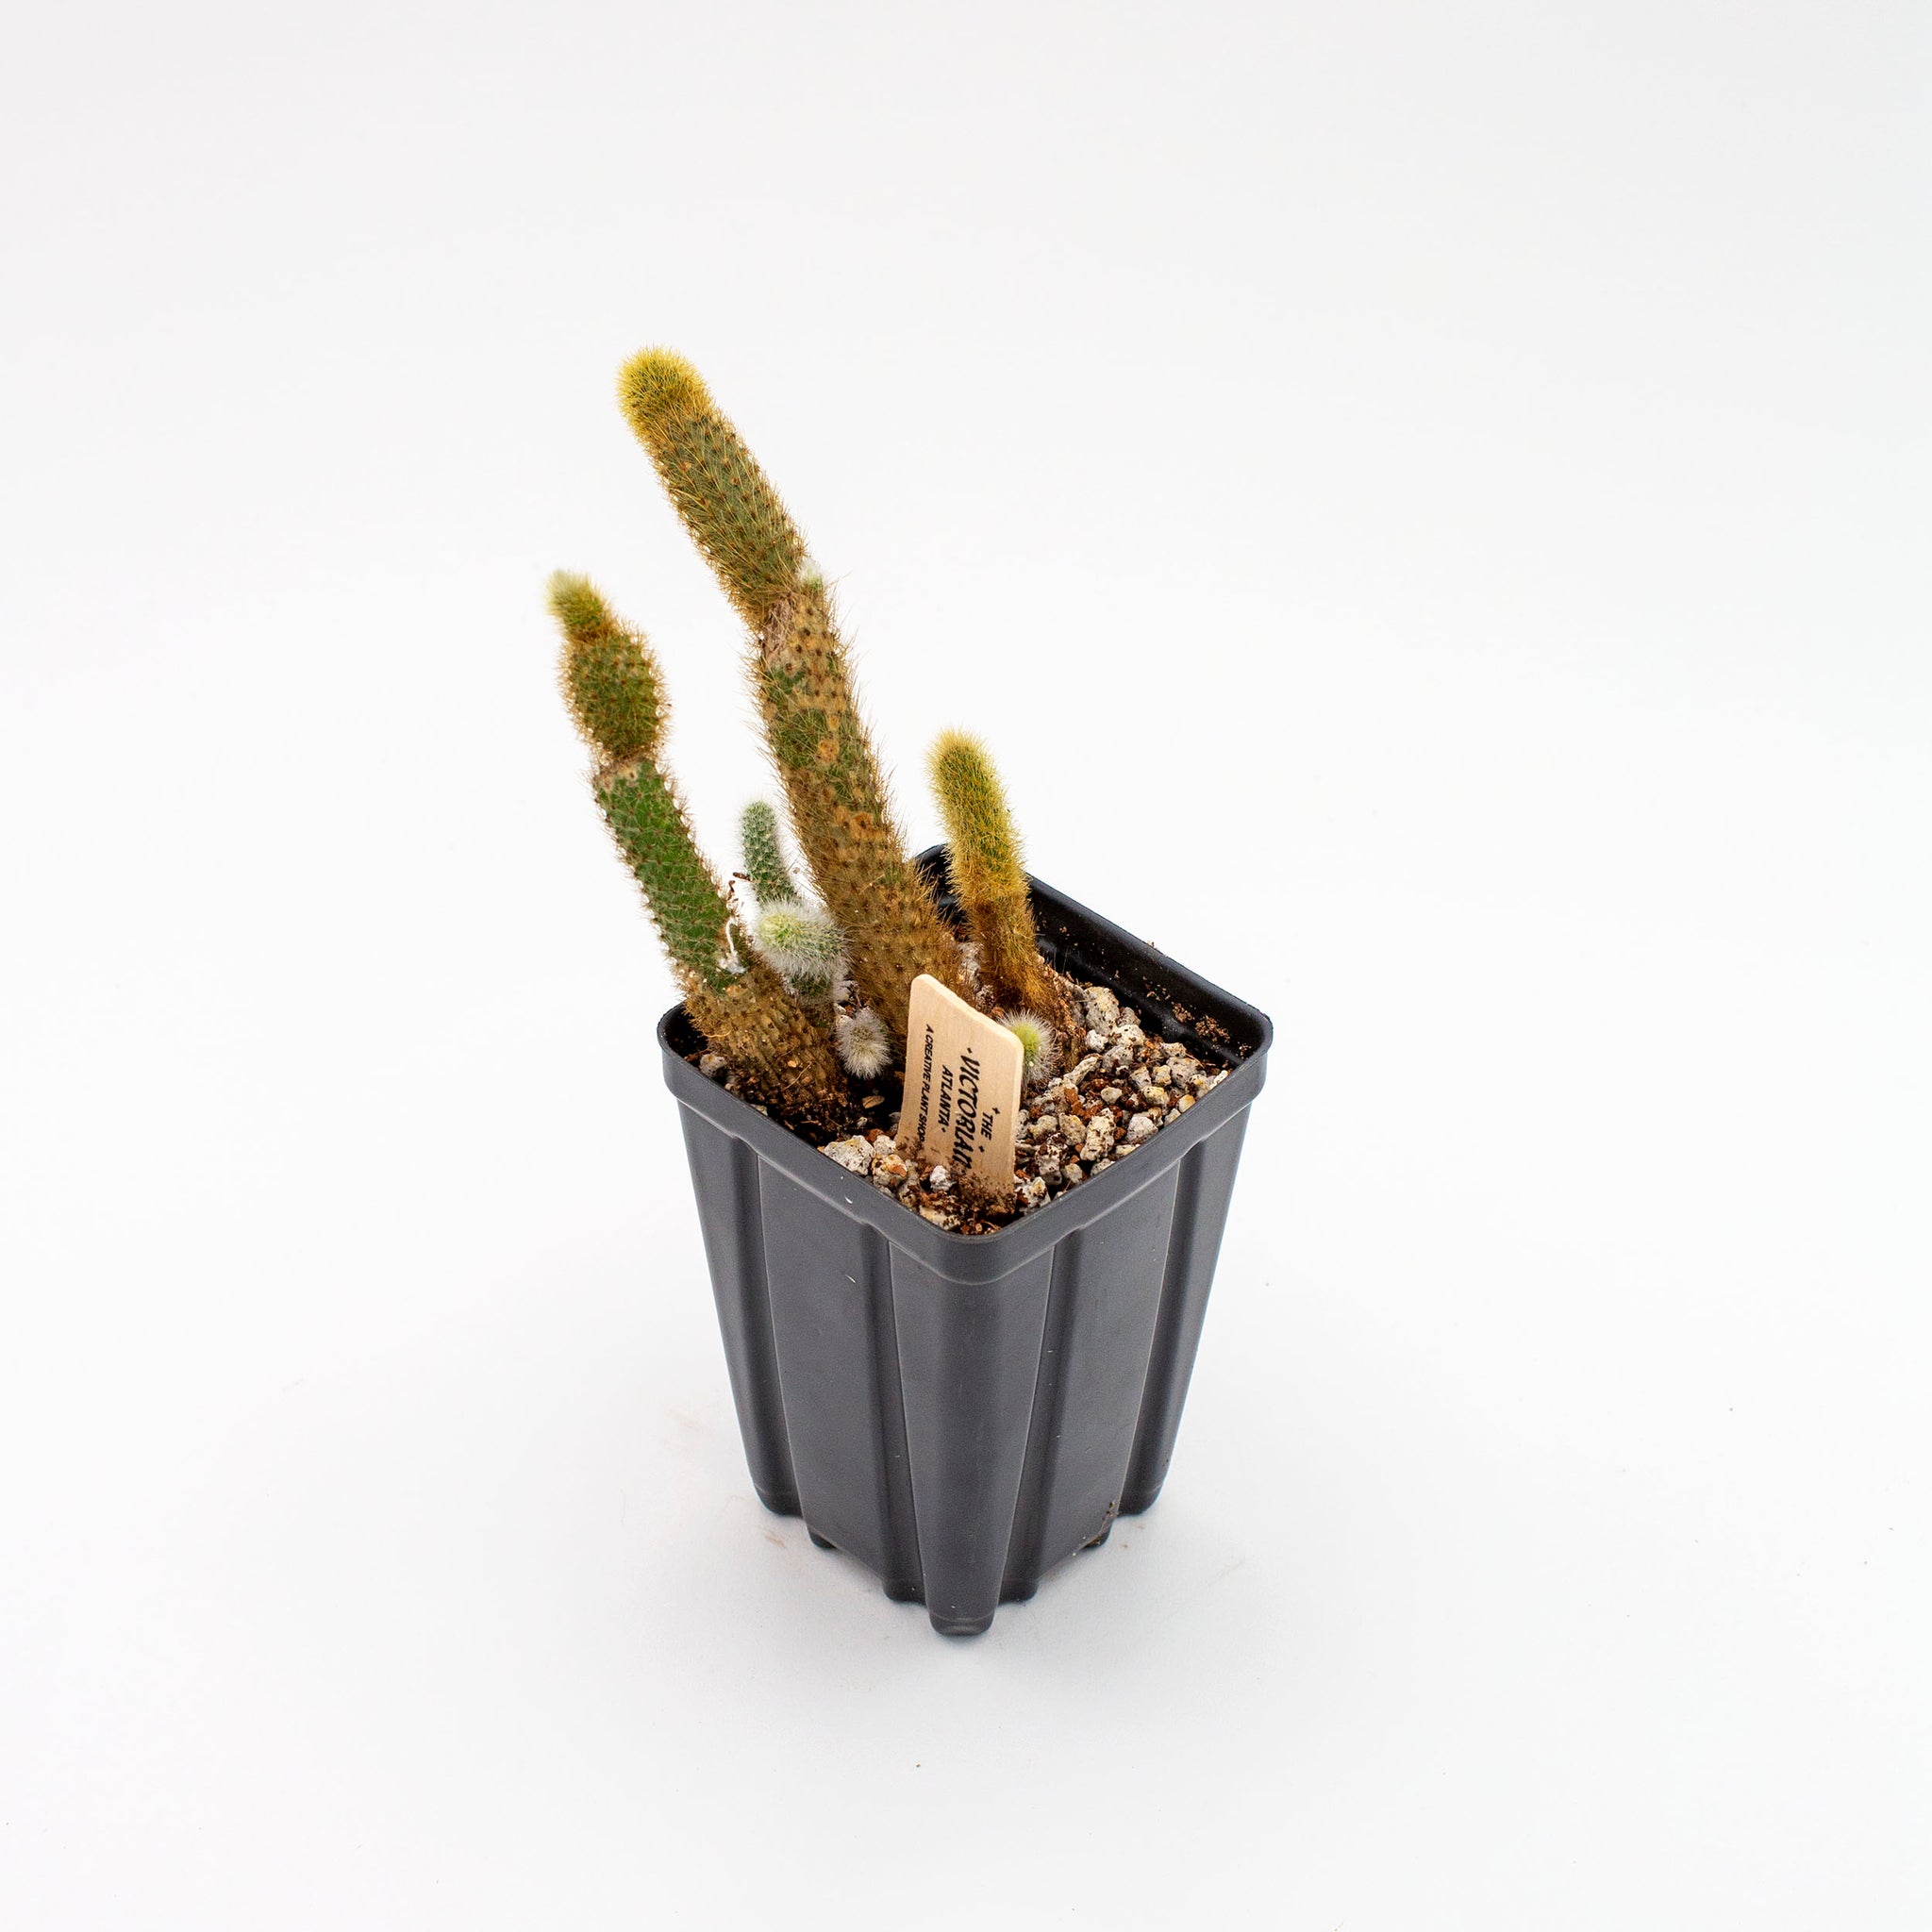 Cleistocactus winteri 'Golden Rat Tail Cactus'